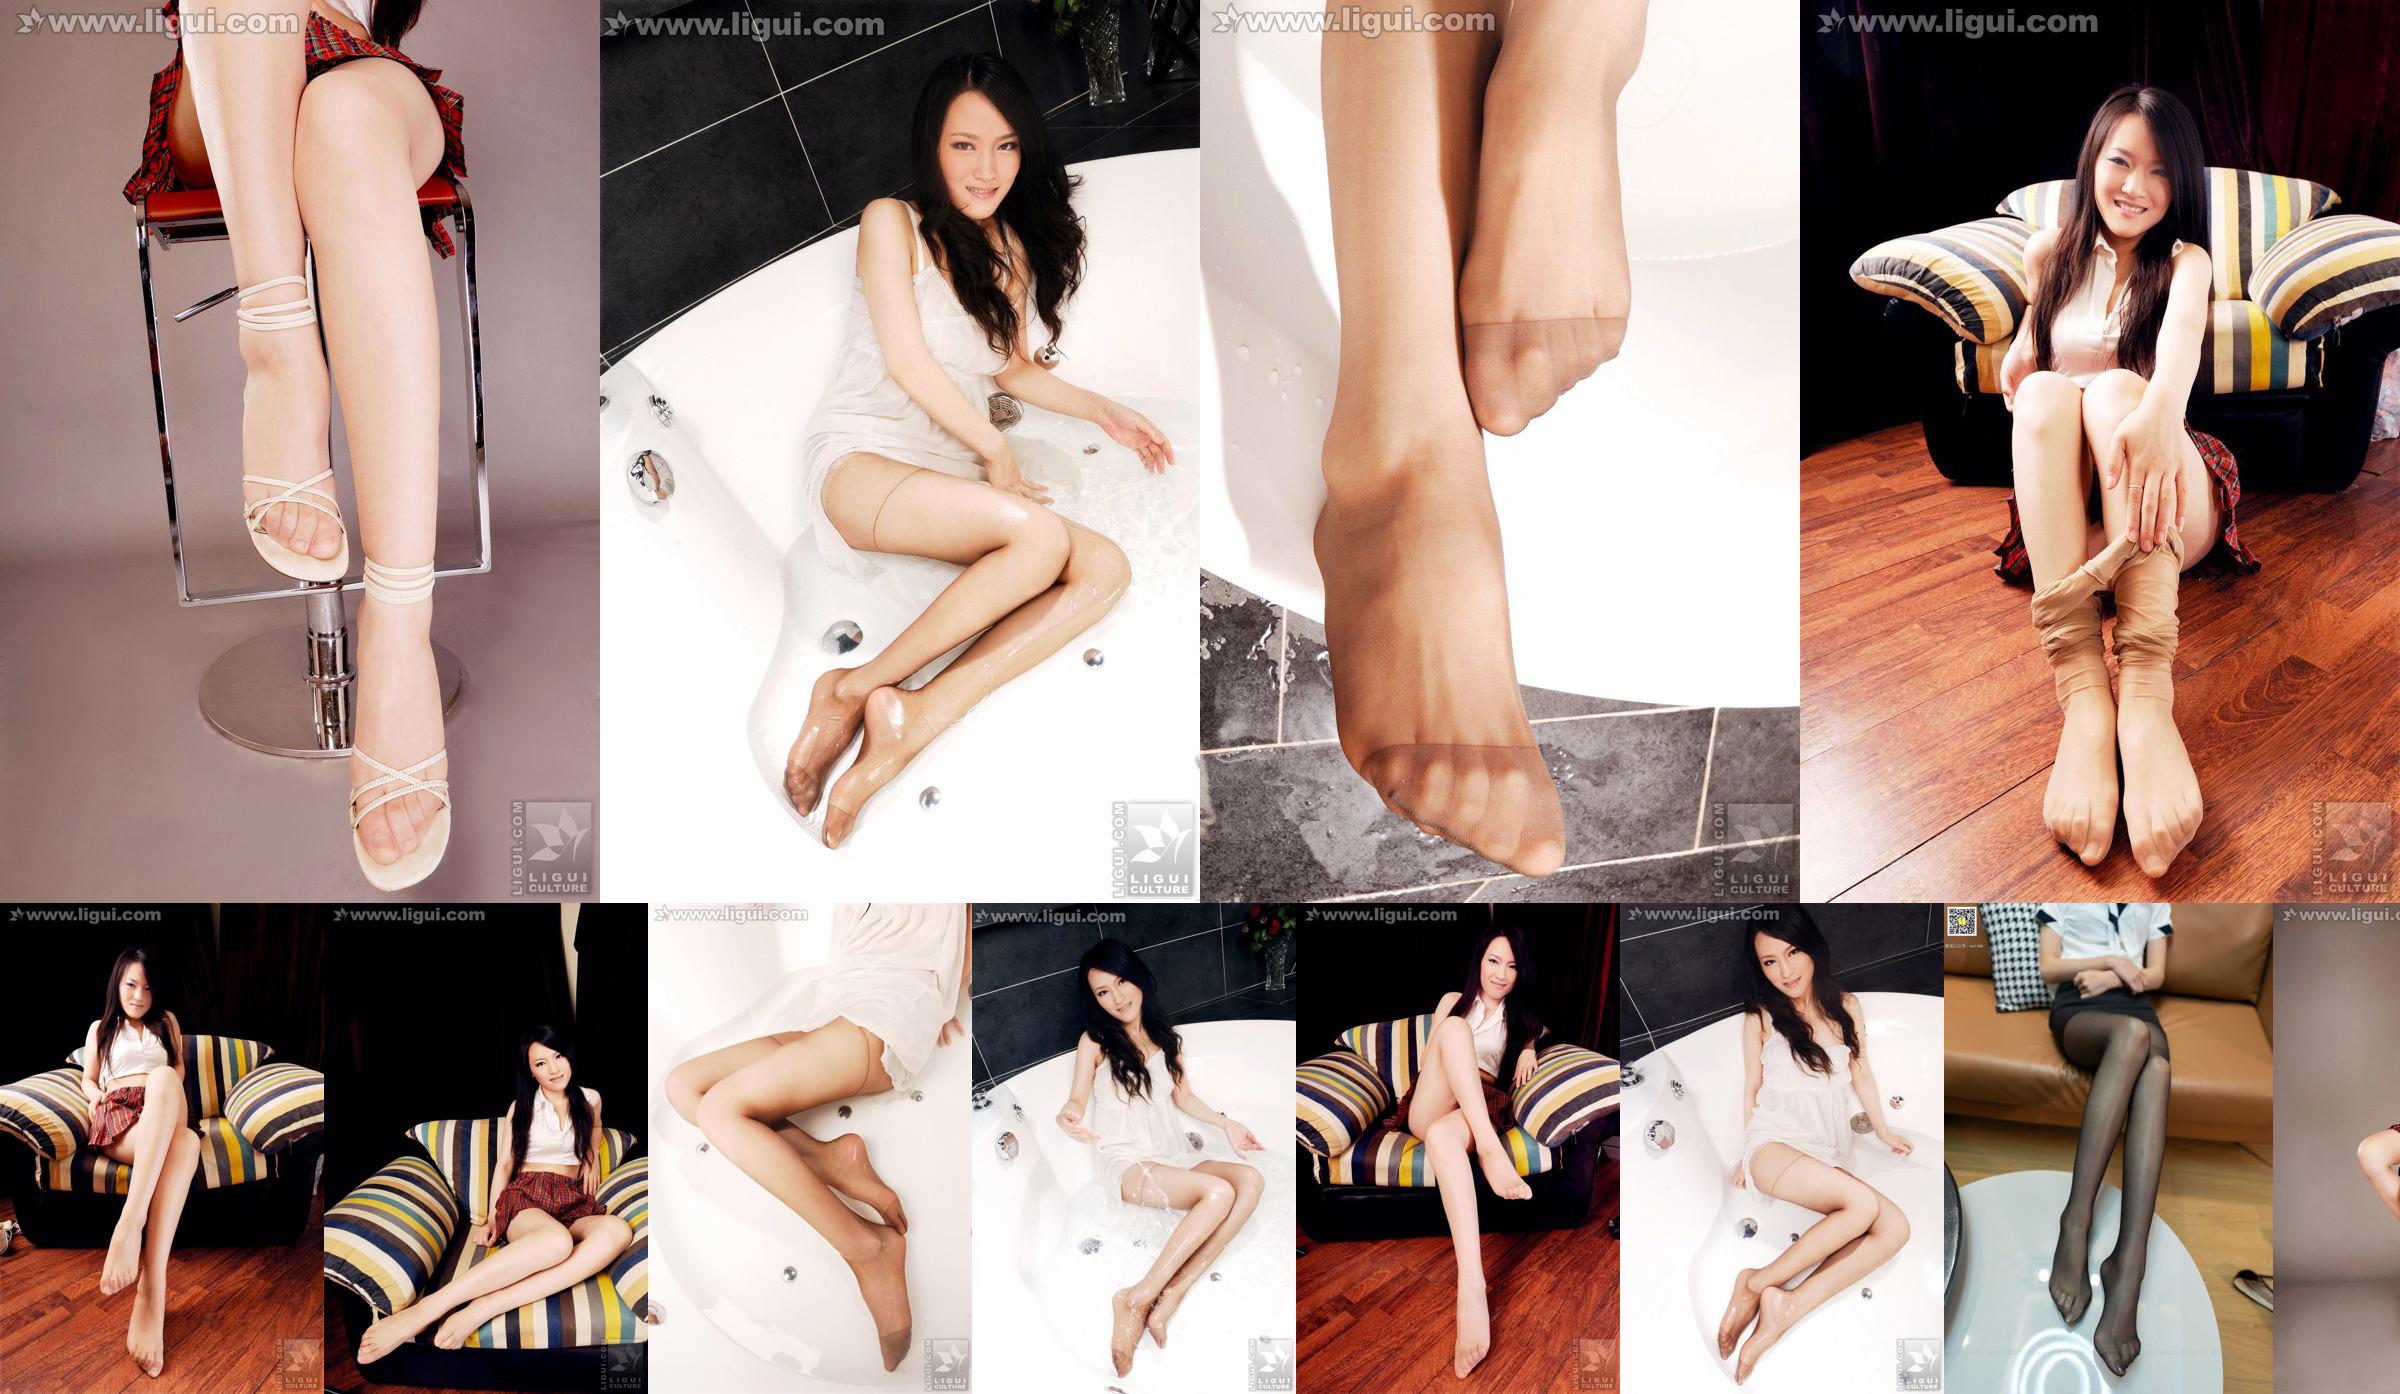 Modelo Wen Ting "Meias de carne doces e fofas com salto alto" [丽 柜 LiGui] Foto de belas pernas e pés de jade No.7184c4 Página 3